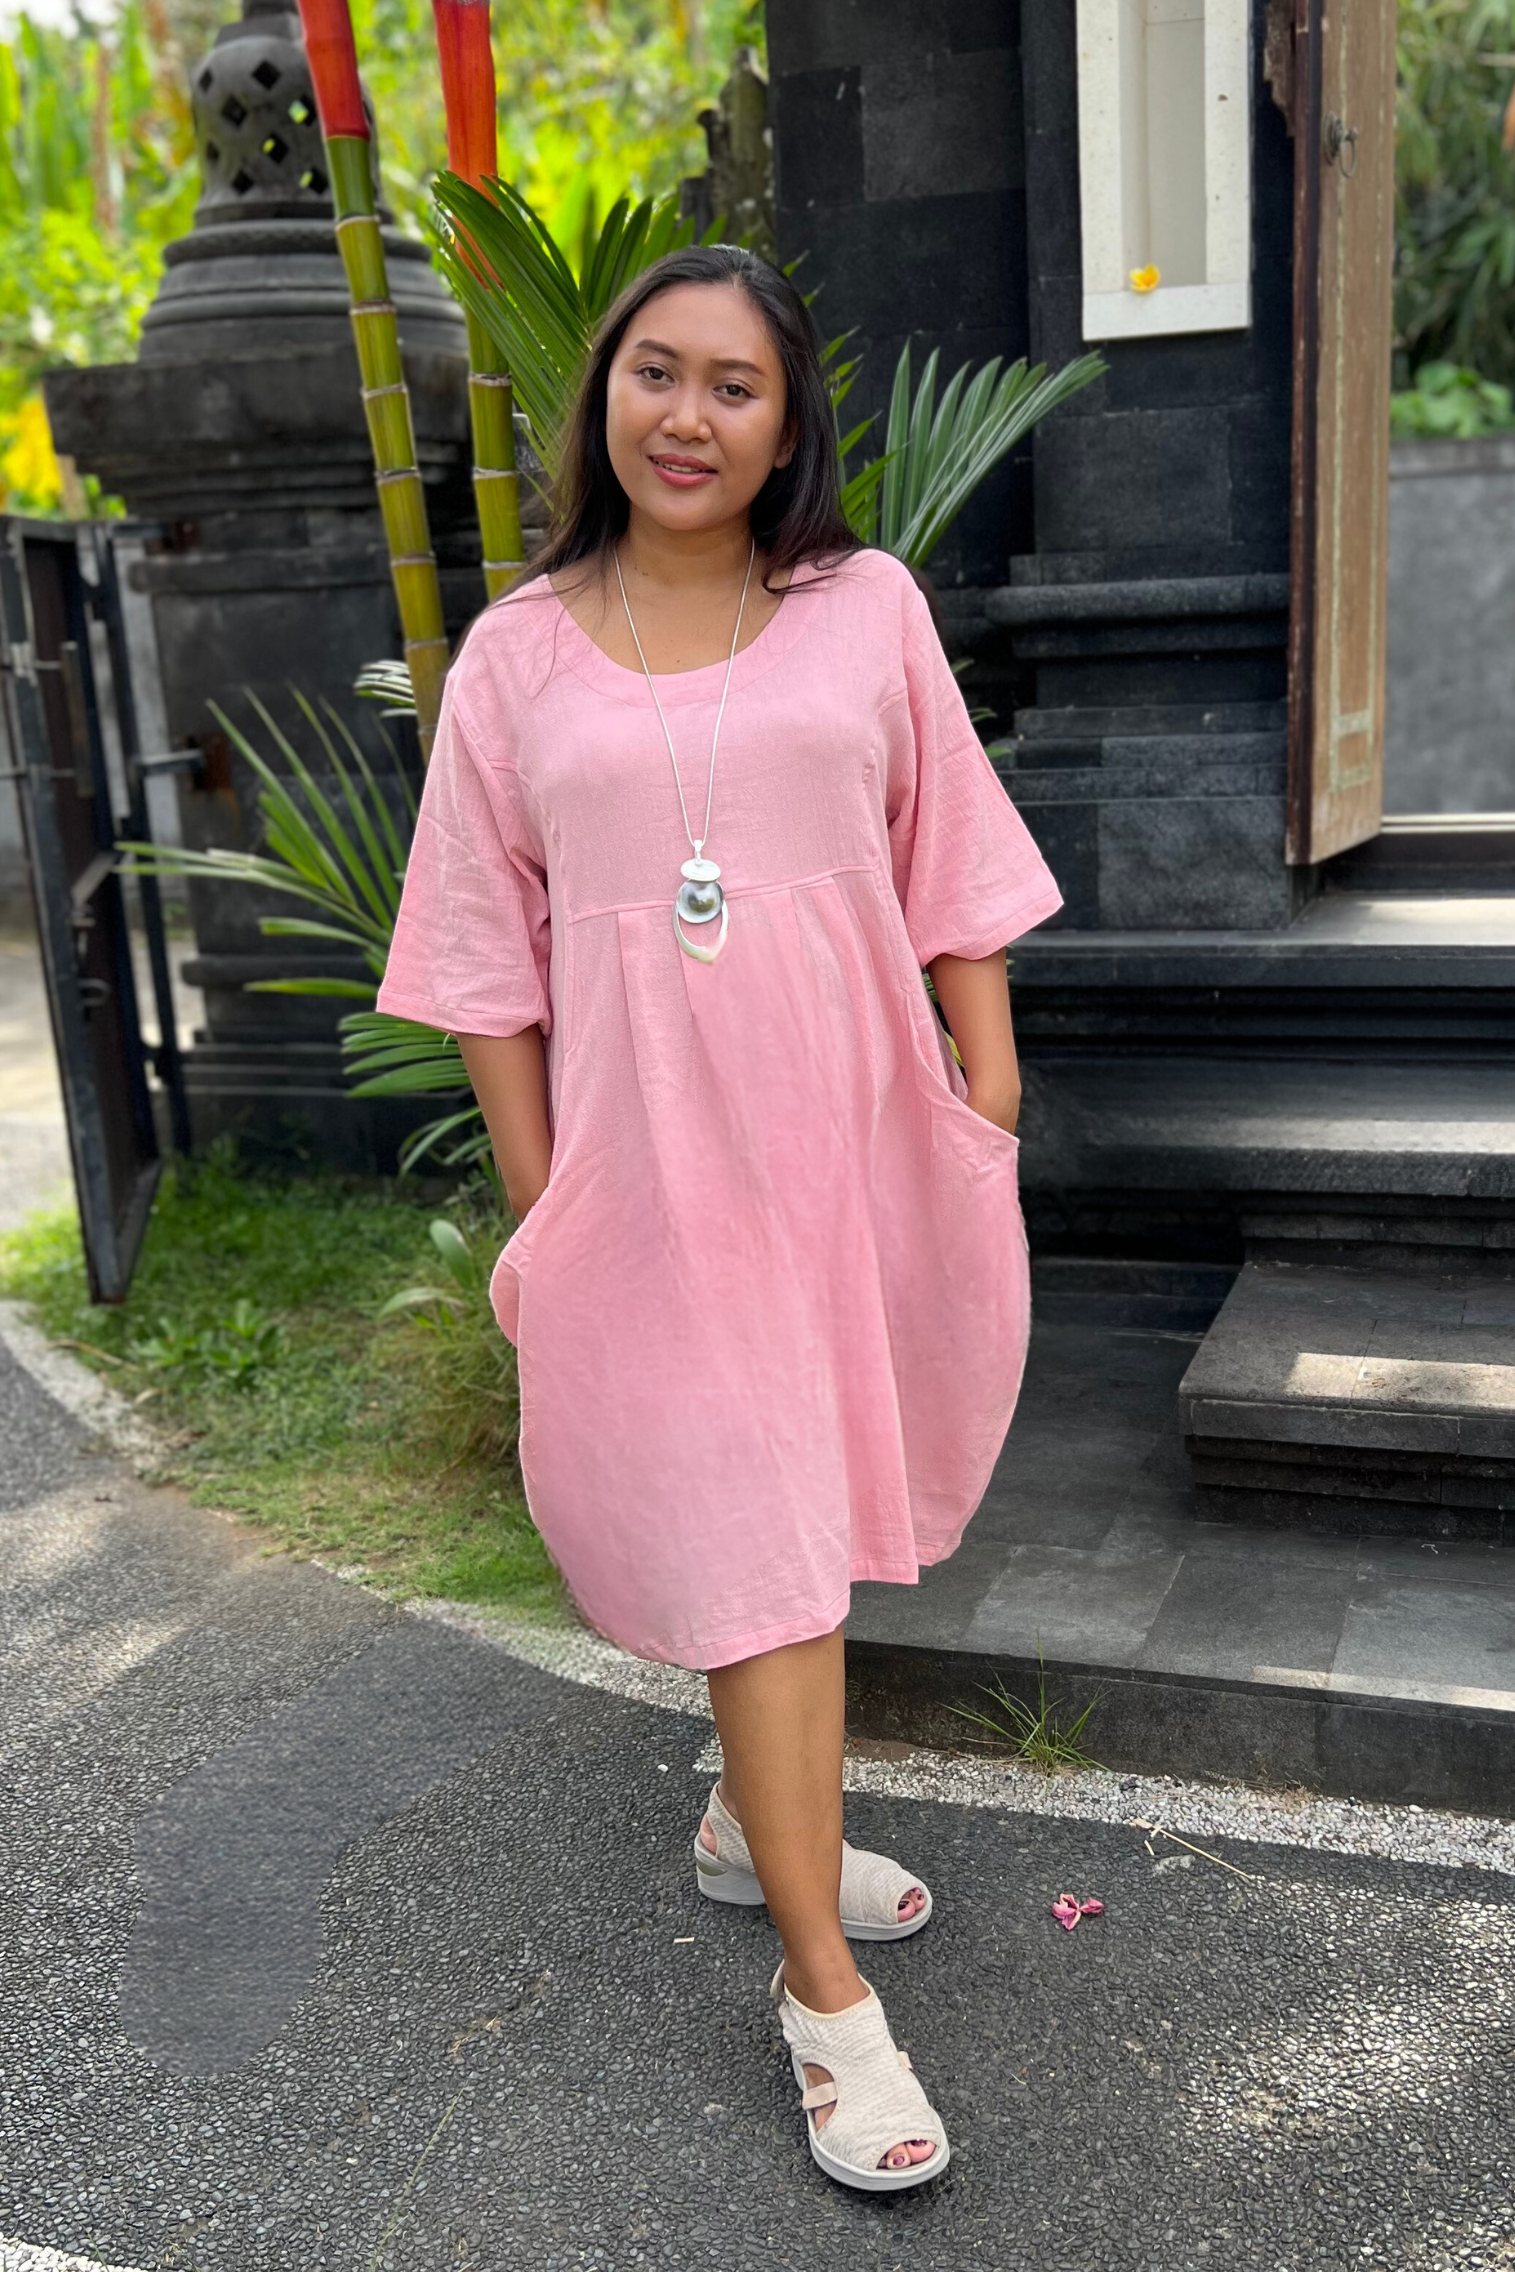 Kita Ku modelling a soft pink cotton dress Isabella in a Balinese setting.